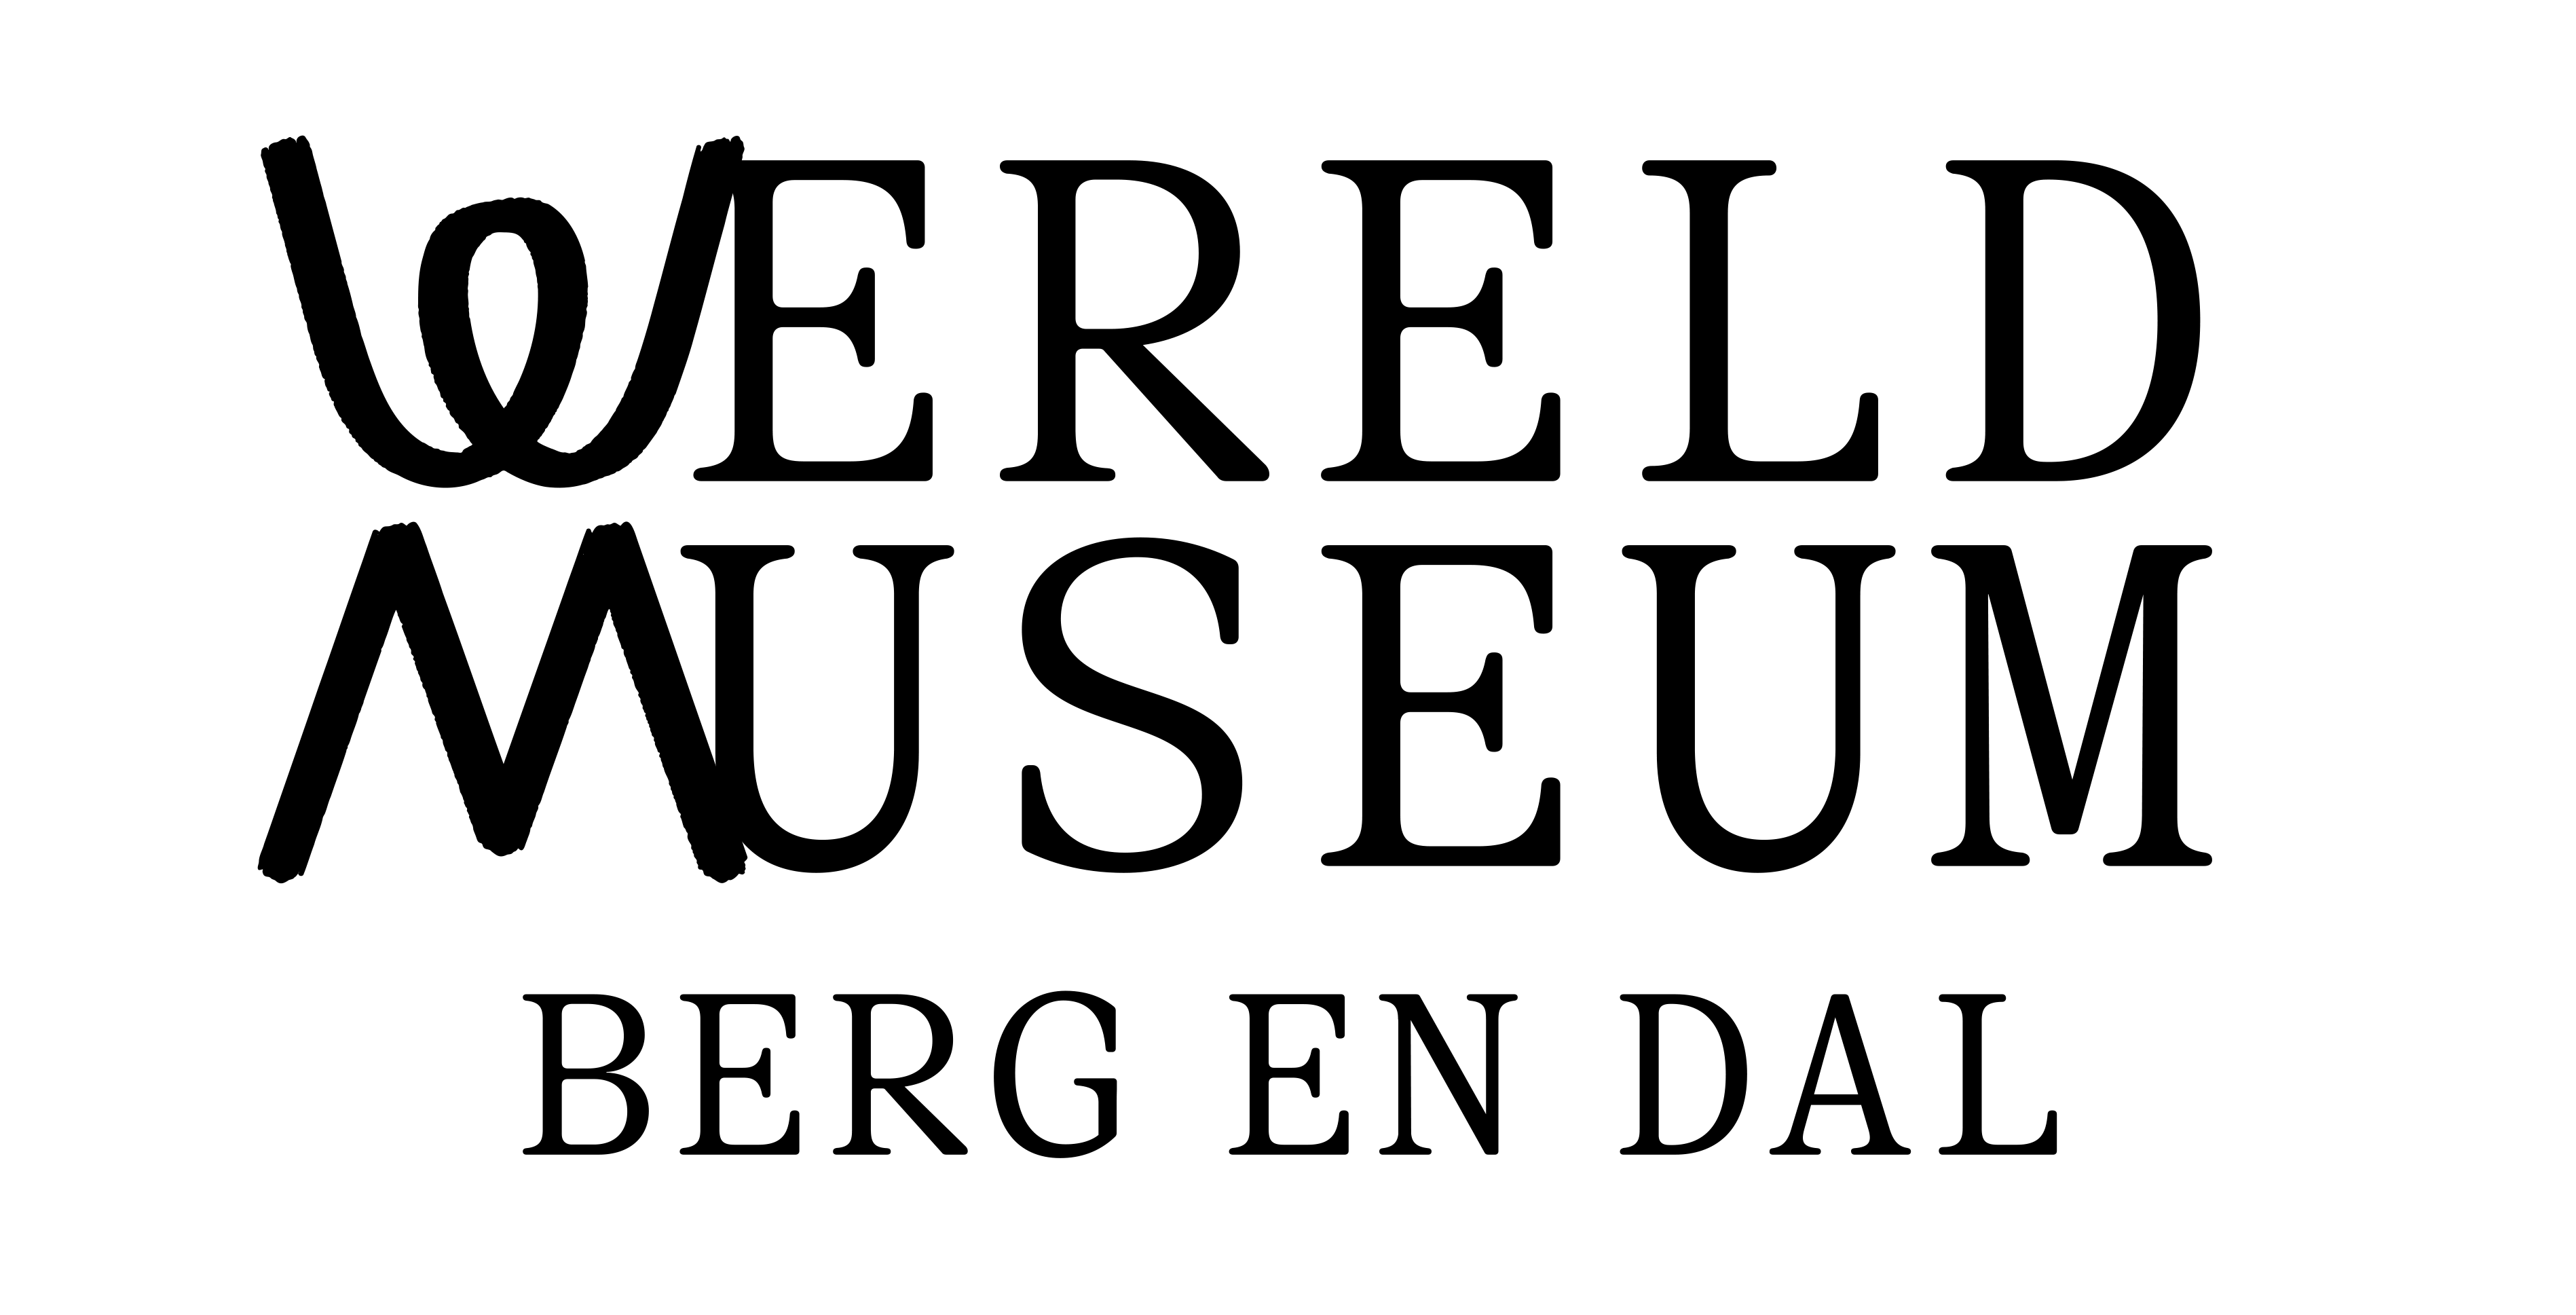 4 tickets voor het Wereldmuseum Berg en Dal!